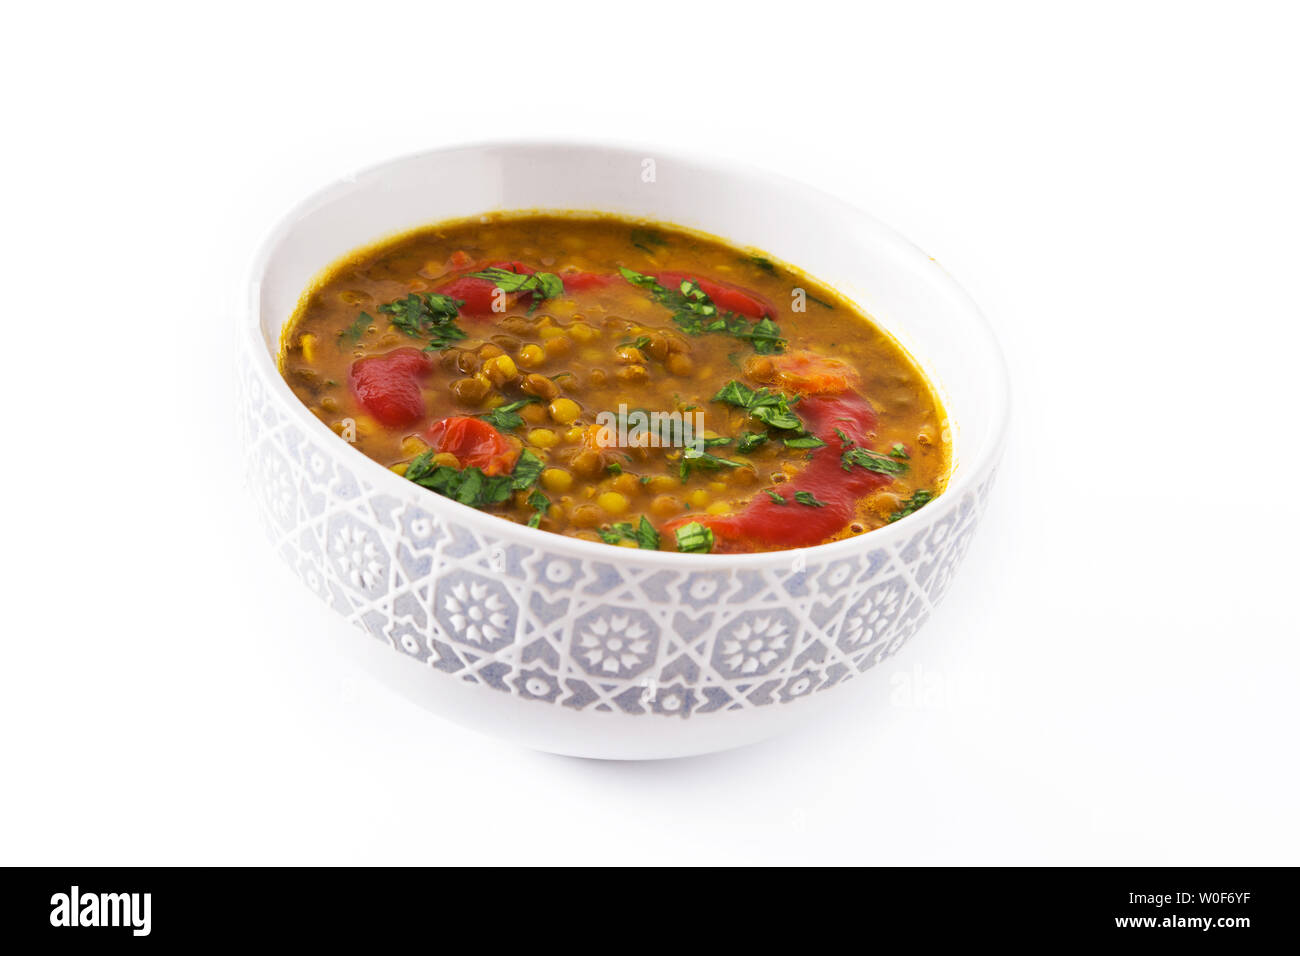 Soupe aux lentilles indiennes dal (dhal) dans un bol isolé sur fond blanc Banque D'Images